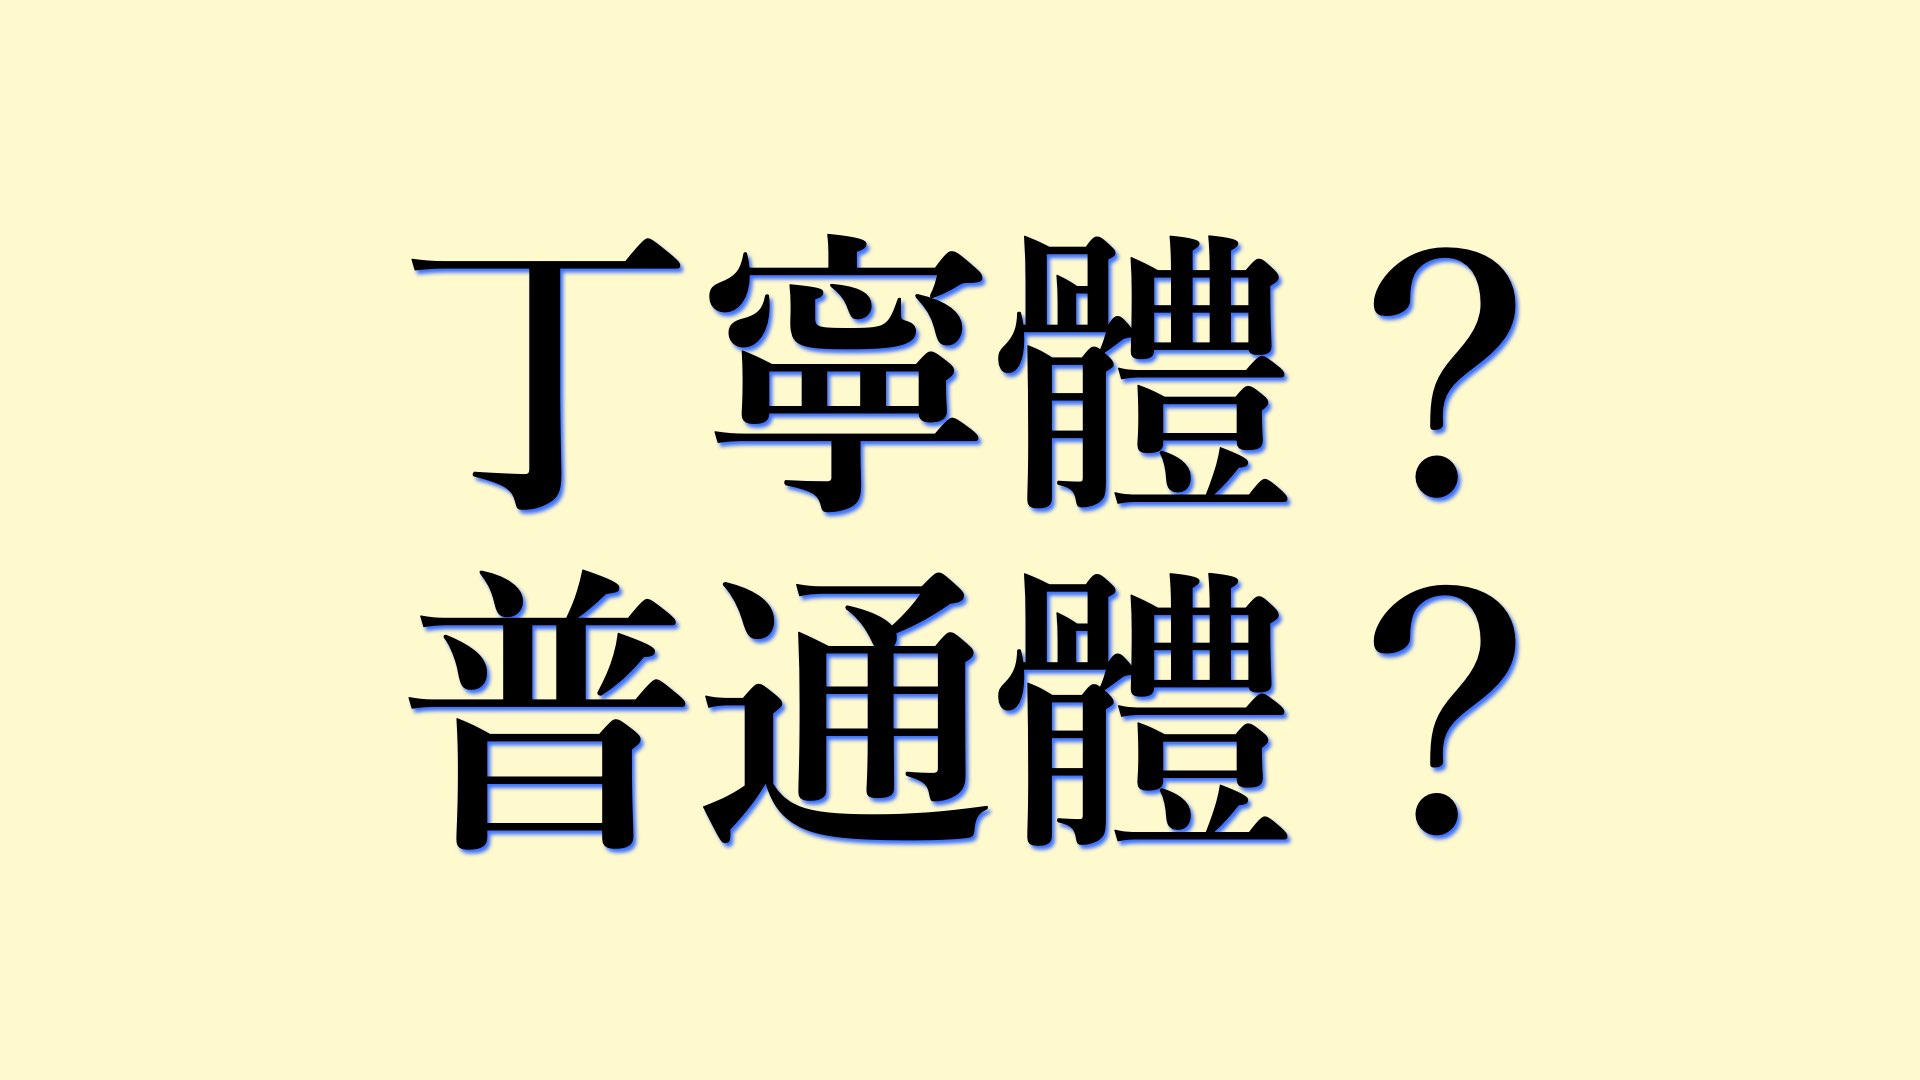 日文文章翻譯-丁寧體？普通體？選哪個？/日本語の文章翻訳-丁寧体と普通体、どっちがいいの？